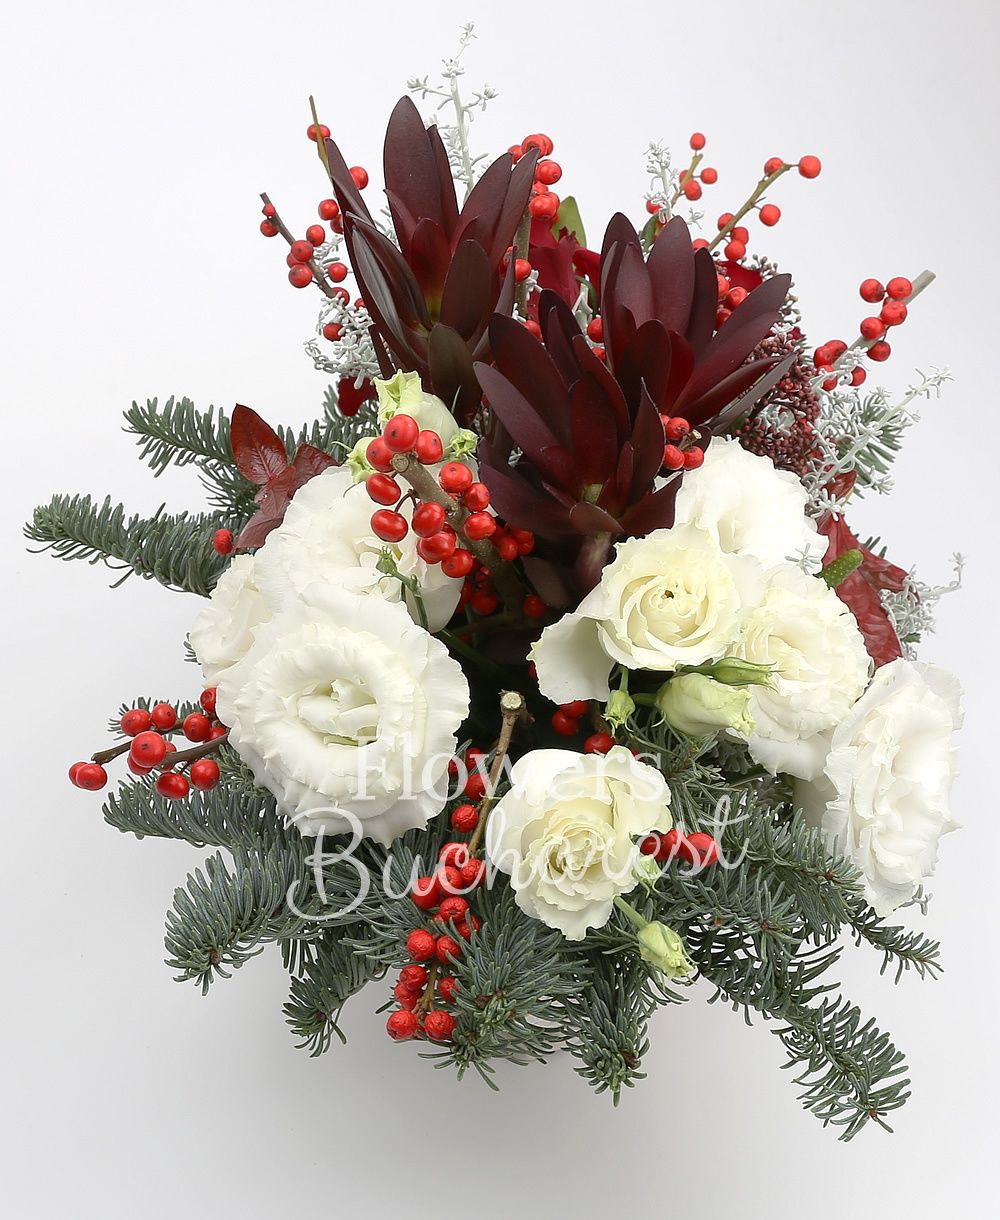 3 red roses, 2 ilex, 2 red anthurium, 3 leucadendron, 3 white lisianthus, 2 schimia, greenery